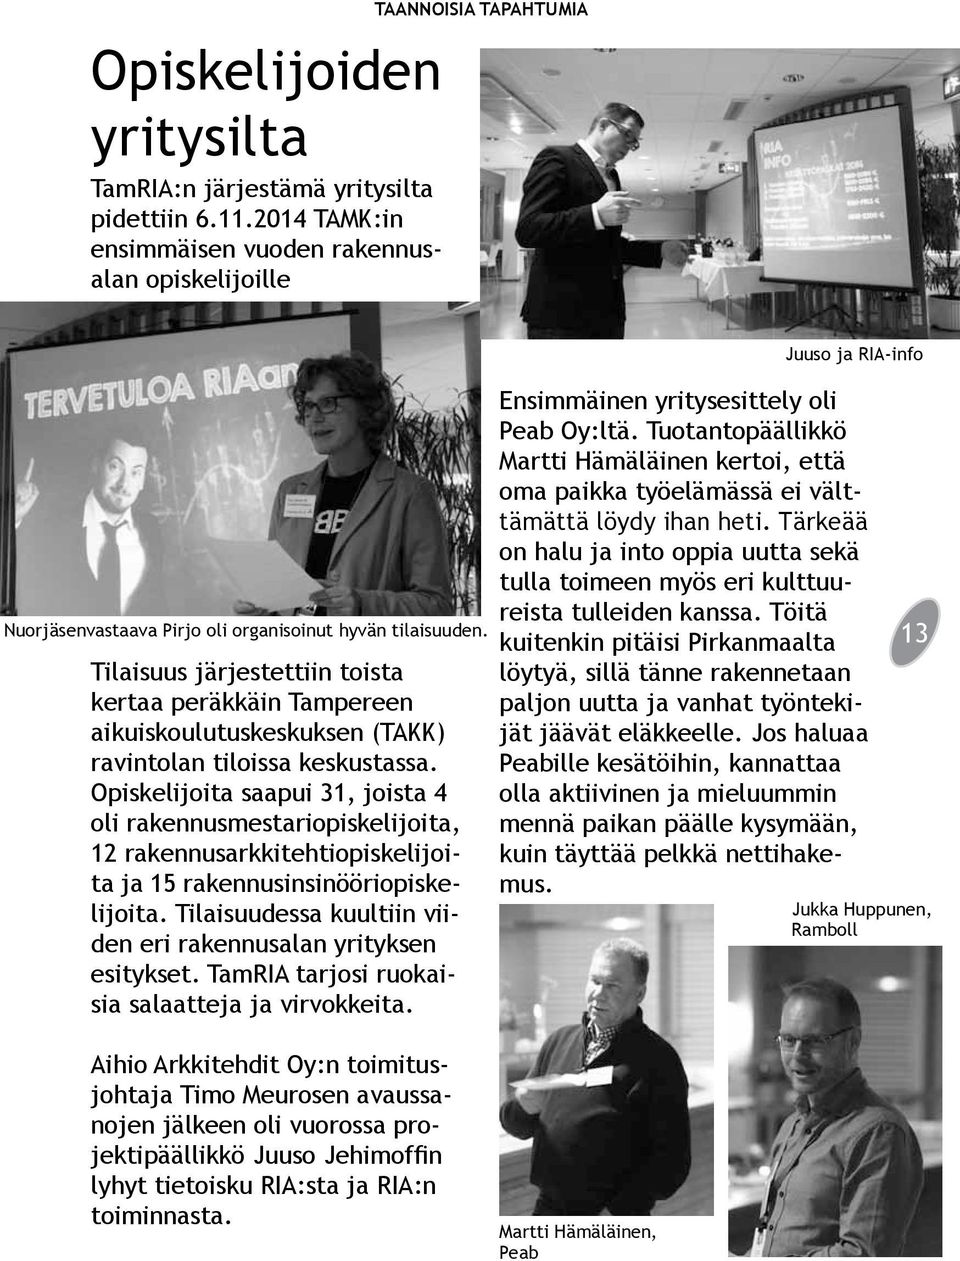 Tilaisuus järjestettiin toista kertaa peräkkäin Tampereen aikuiskoulutuskeskuksen (TAKK) ravintolan tiloissa keskustassa.